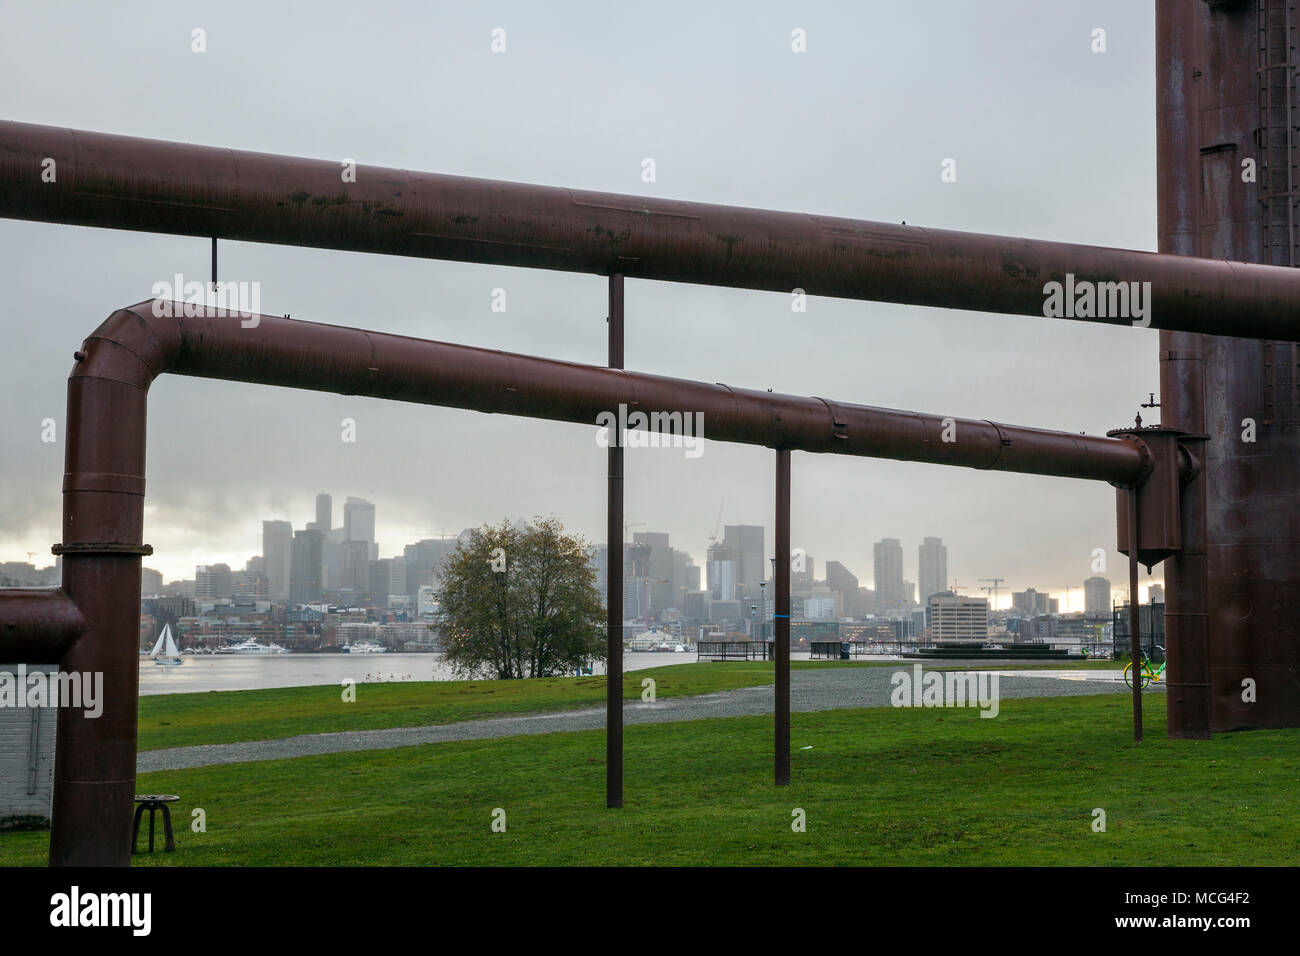 WA14367-00...WASHINGTON - Seattle skyline della città incorniciata dai tubi industriali a gas Parco di opere in un giorno di pioggia. Foto Stock